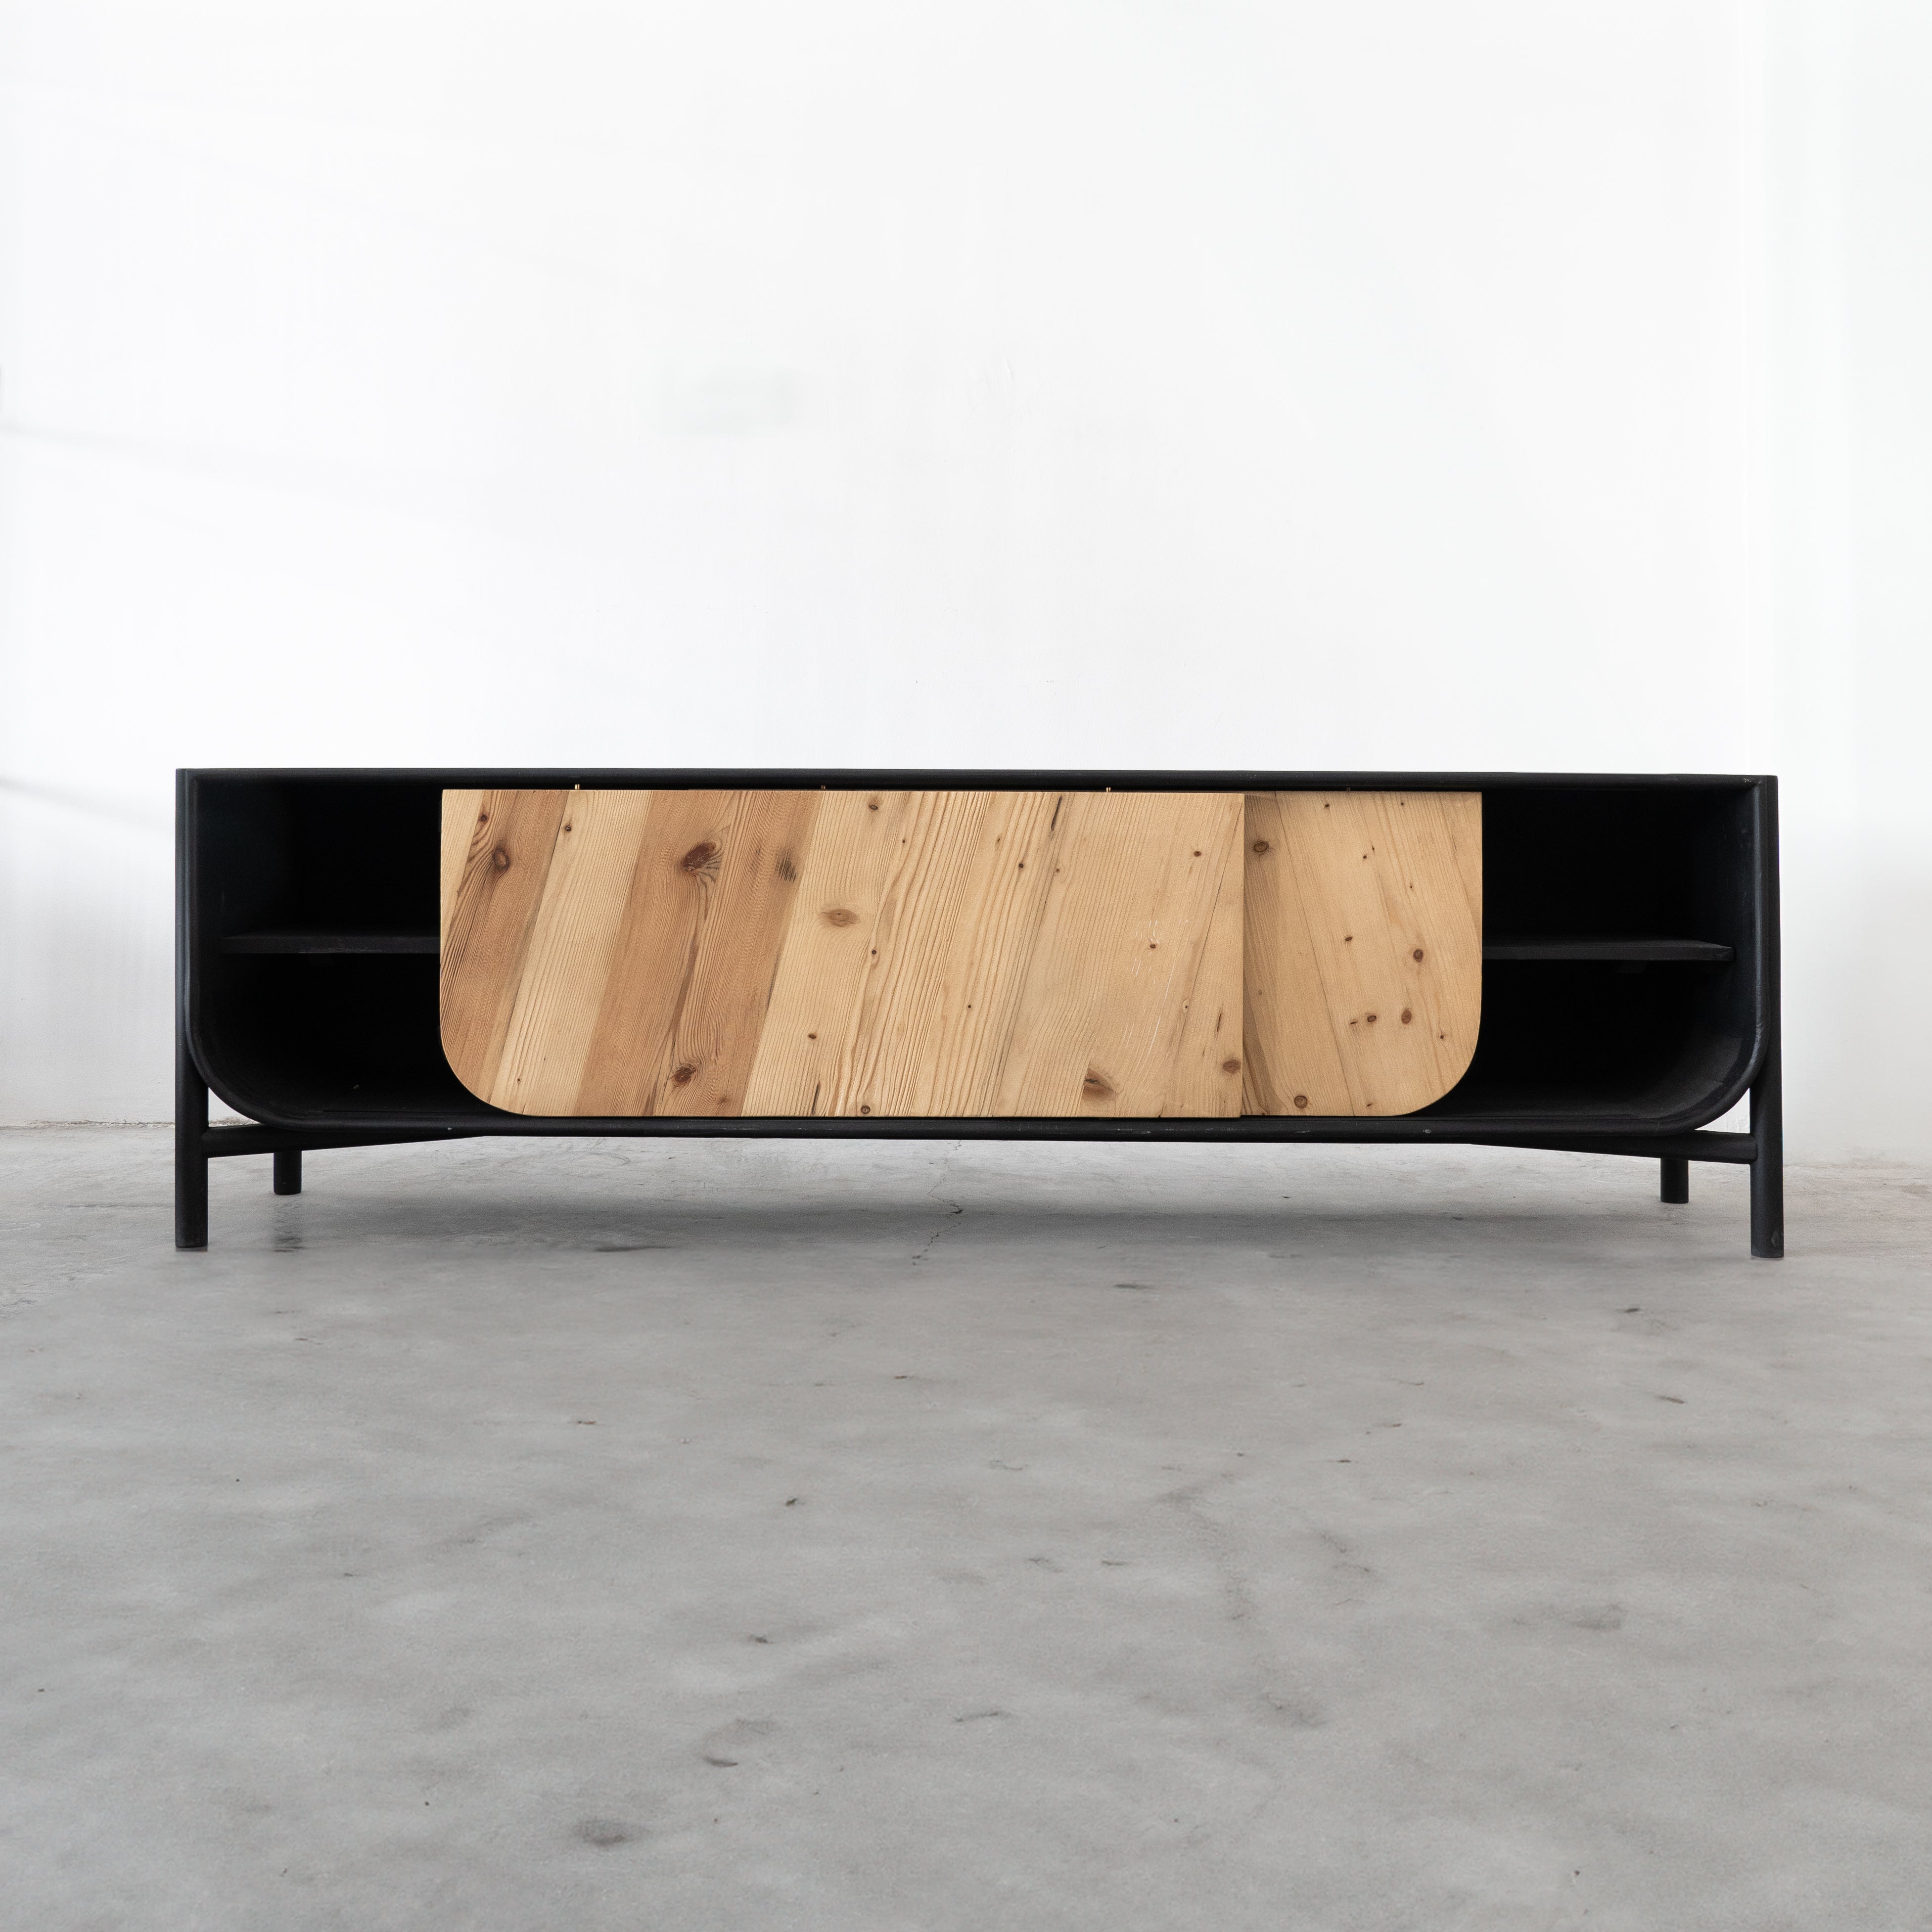 Retro Black TV Unit  - WS Living - UAE - TV Units Wood and steel Furnitures - Dubai